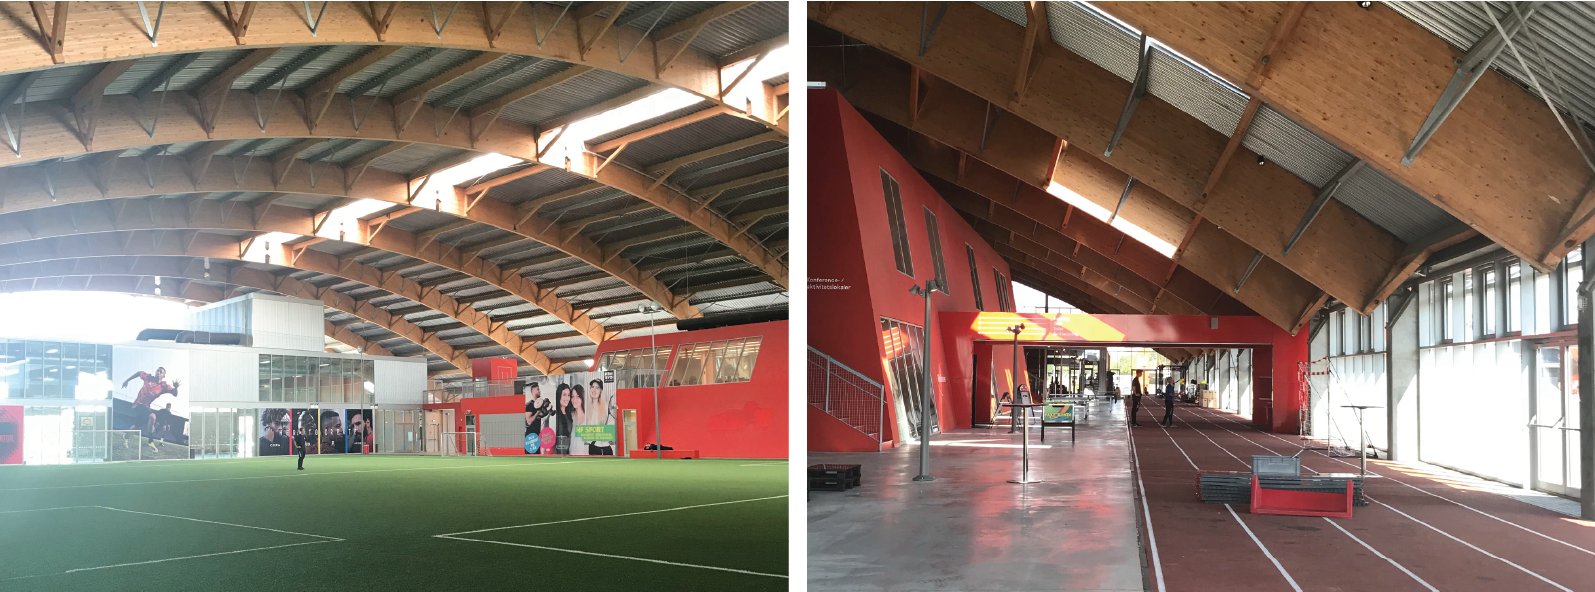 Hafnia-hallen har et bredt spekter av akitivitetsflater til både ballspill og friidrett.